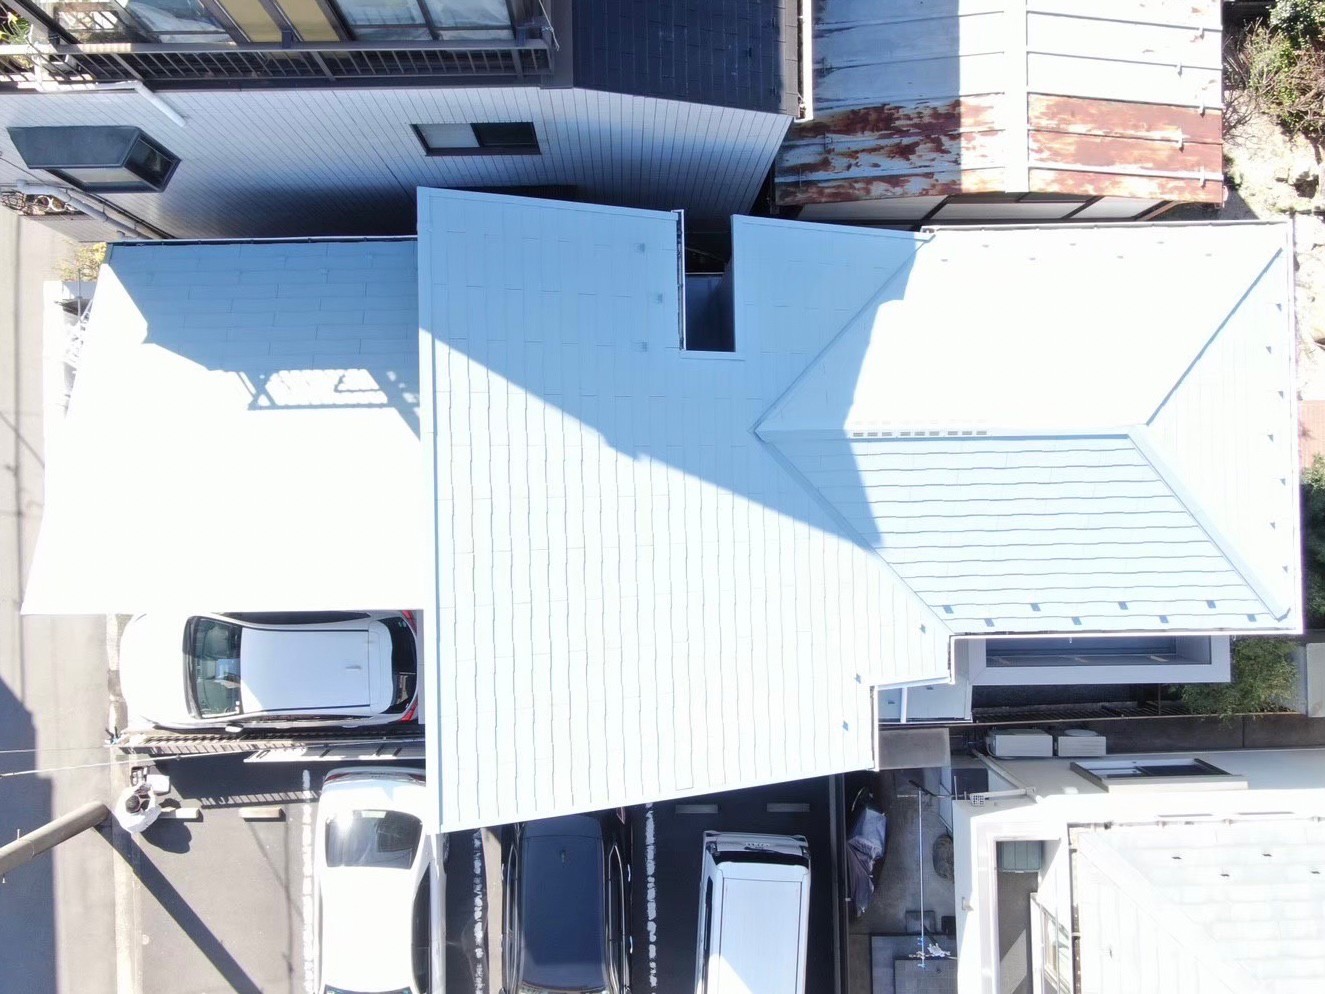 横浜市神奈川区で外壁屋根塗装